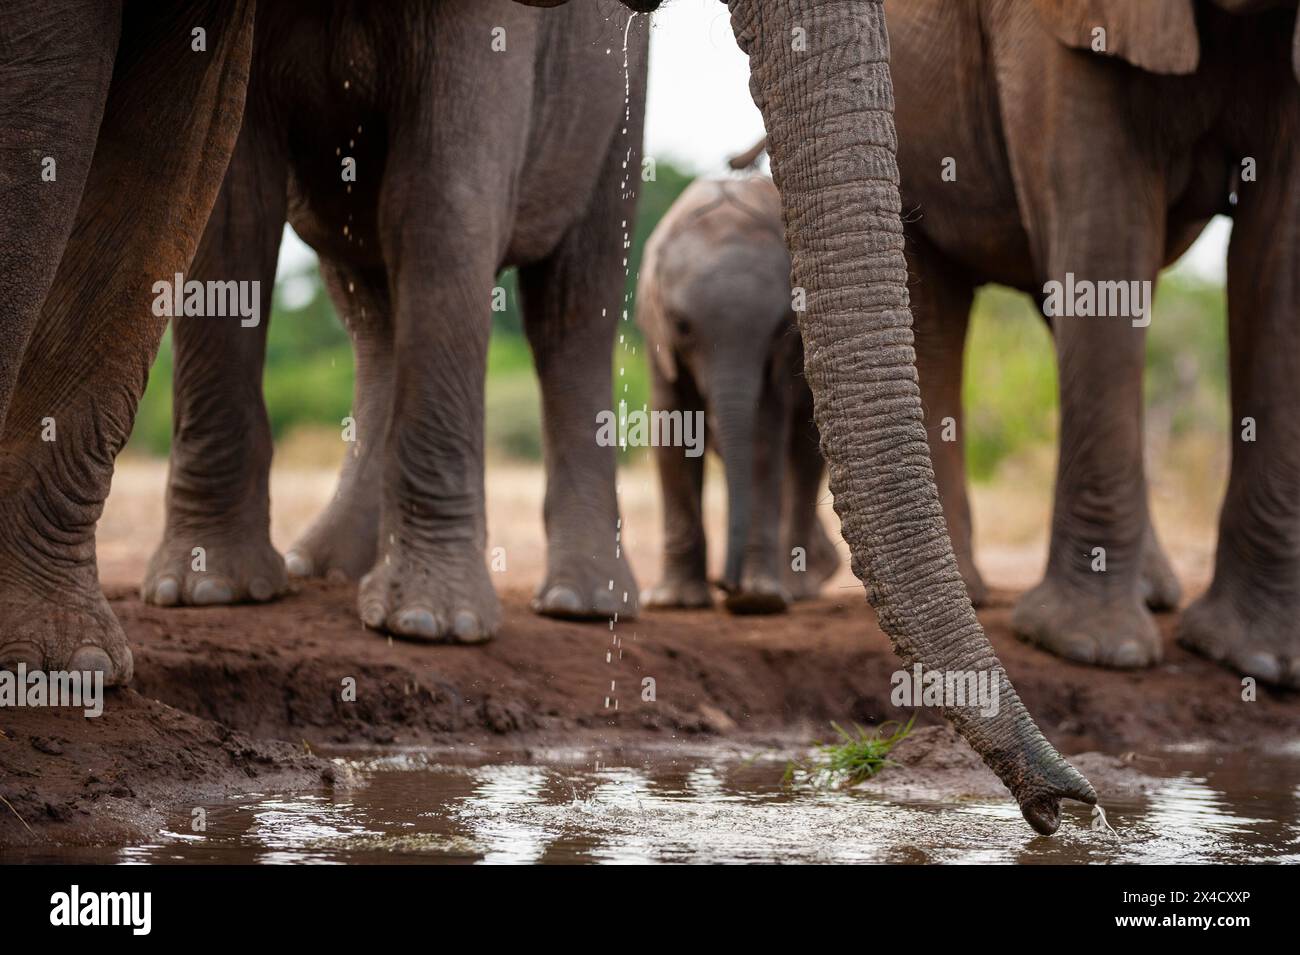 Dettaglio del tronco di un elefante africano, Loxodonta Africana, mentre beveva in un pozzo d'acqua. Riserva di caccia di Mashatu, Botswana. Foto Stock